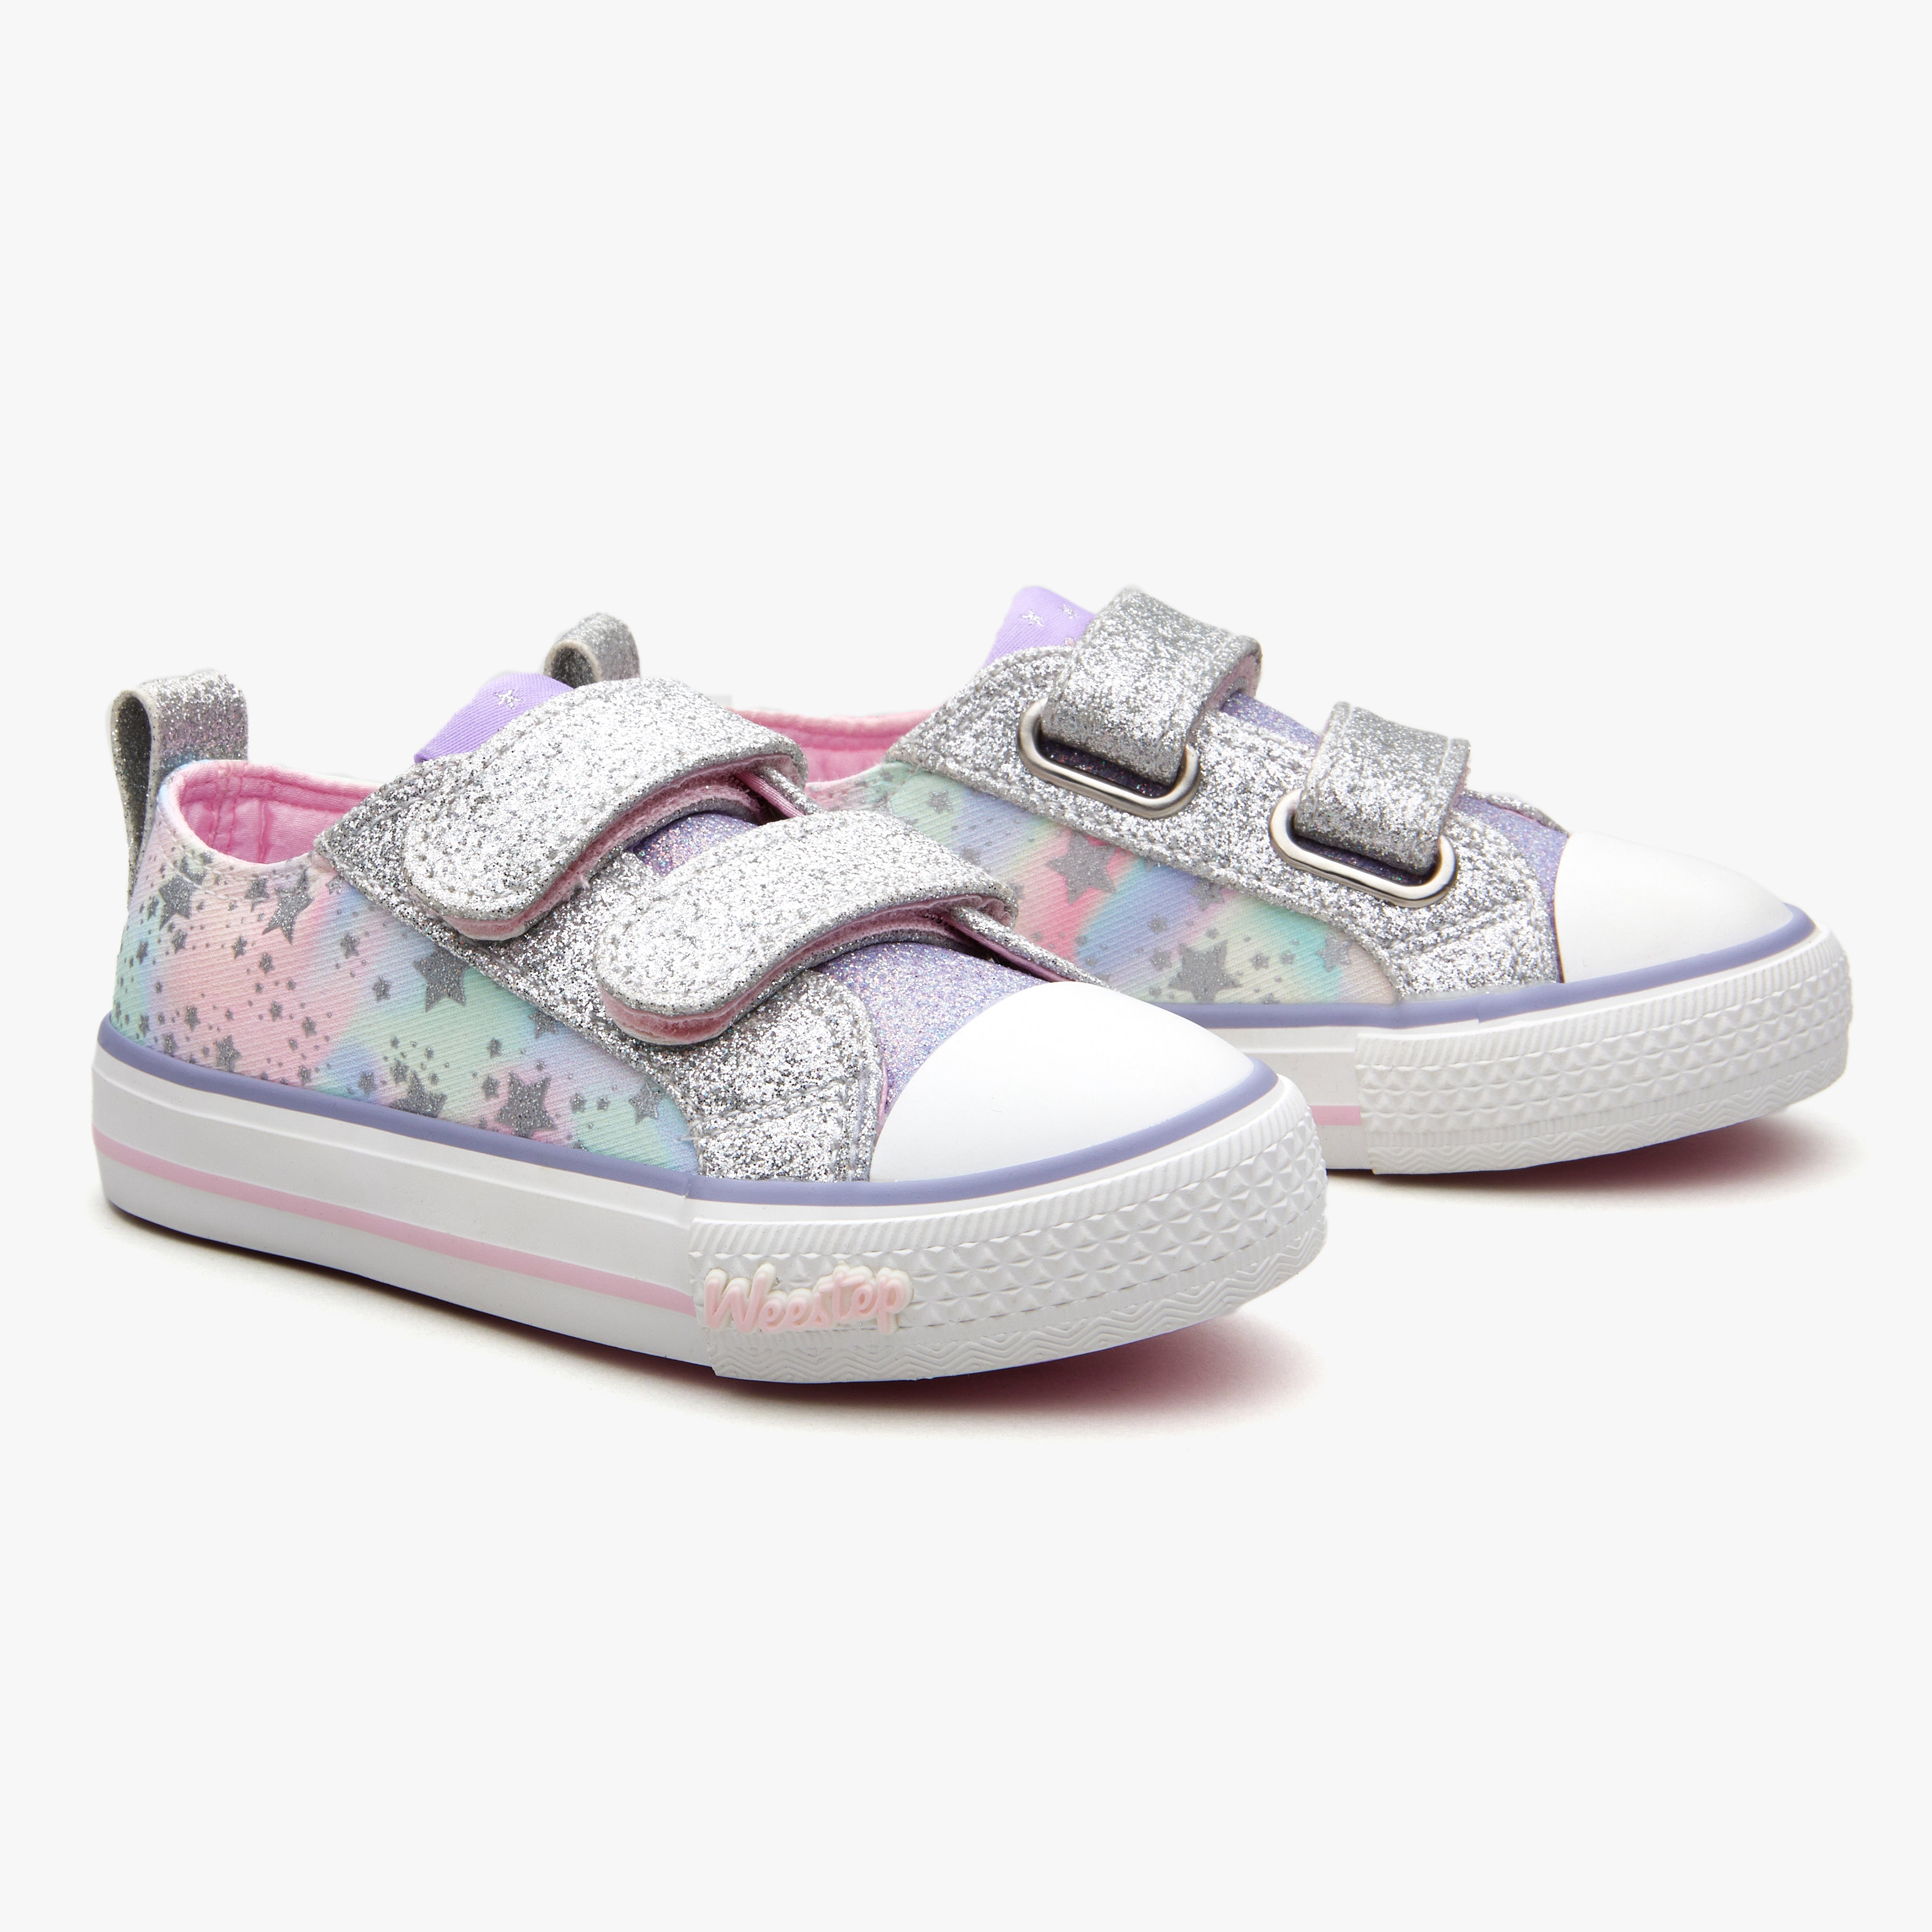 Weestep Toddler/Littke Kid Girls Glitter School Casual Sneakers